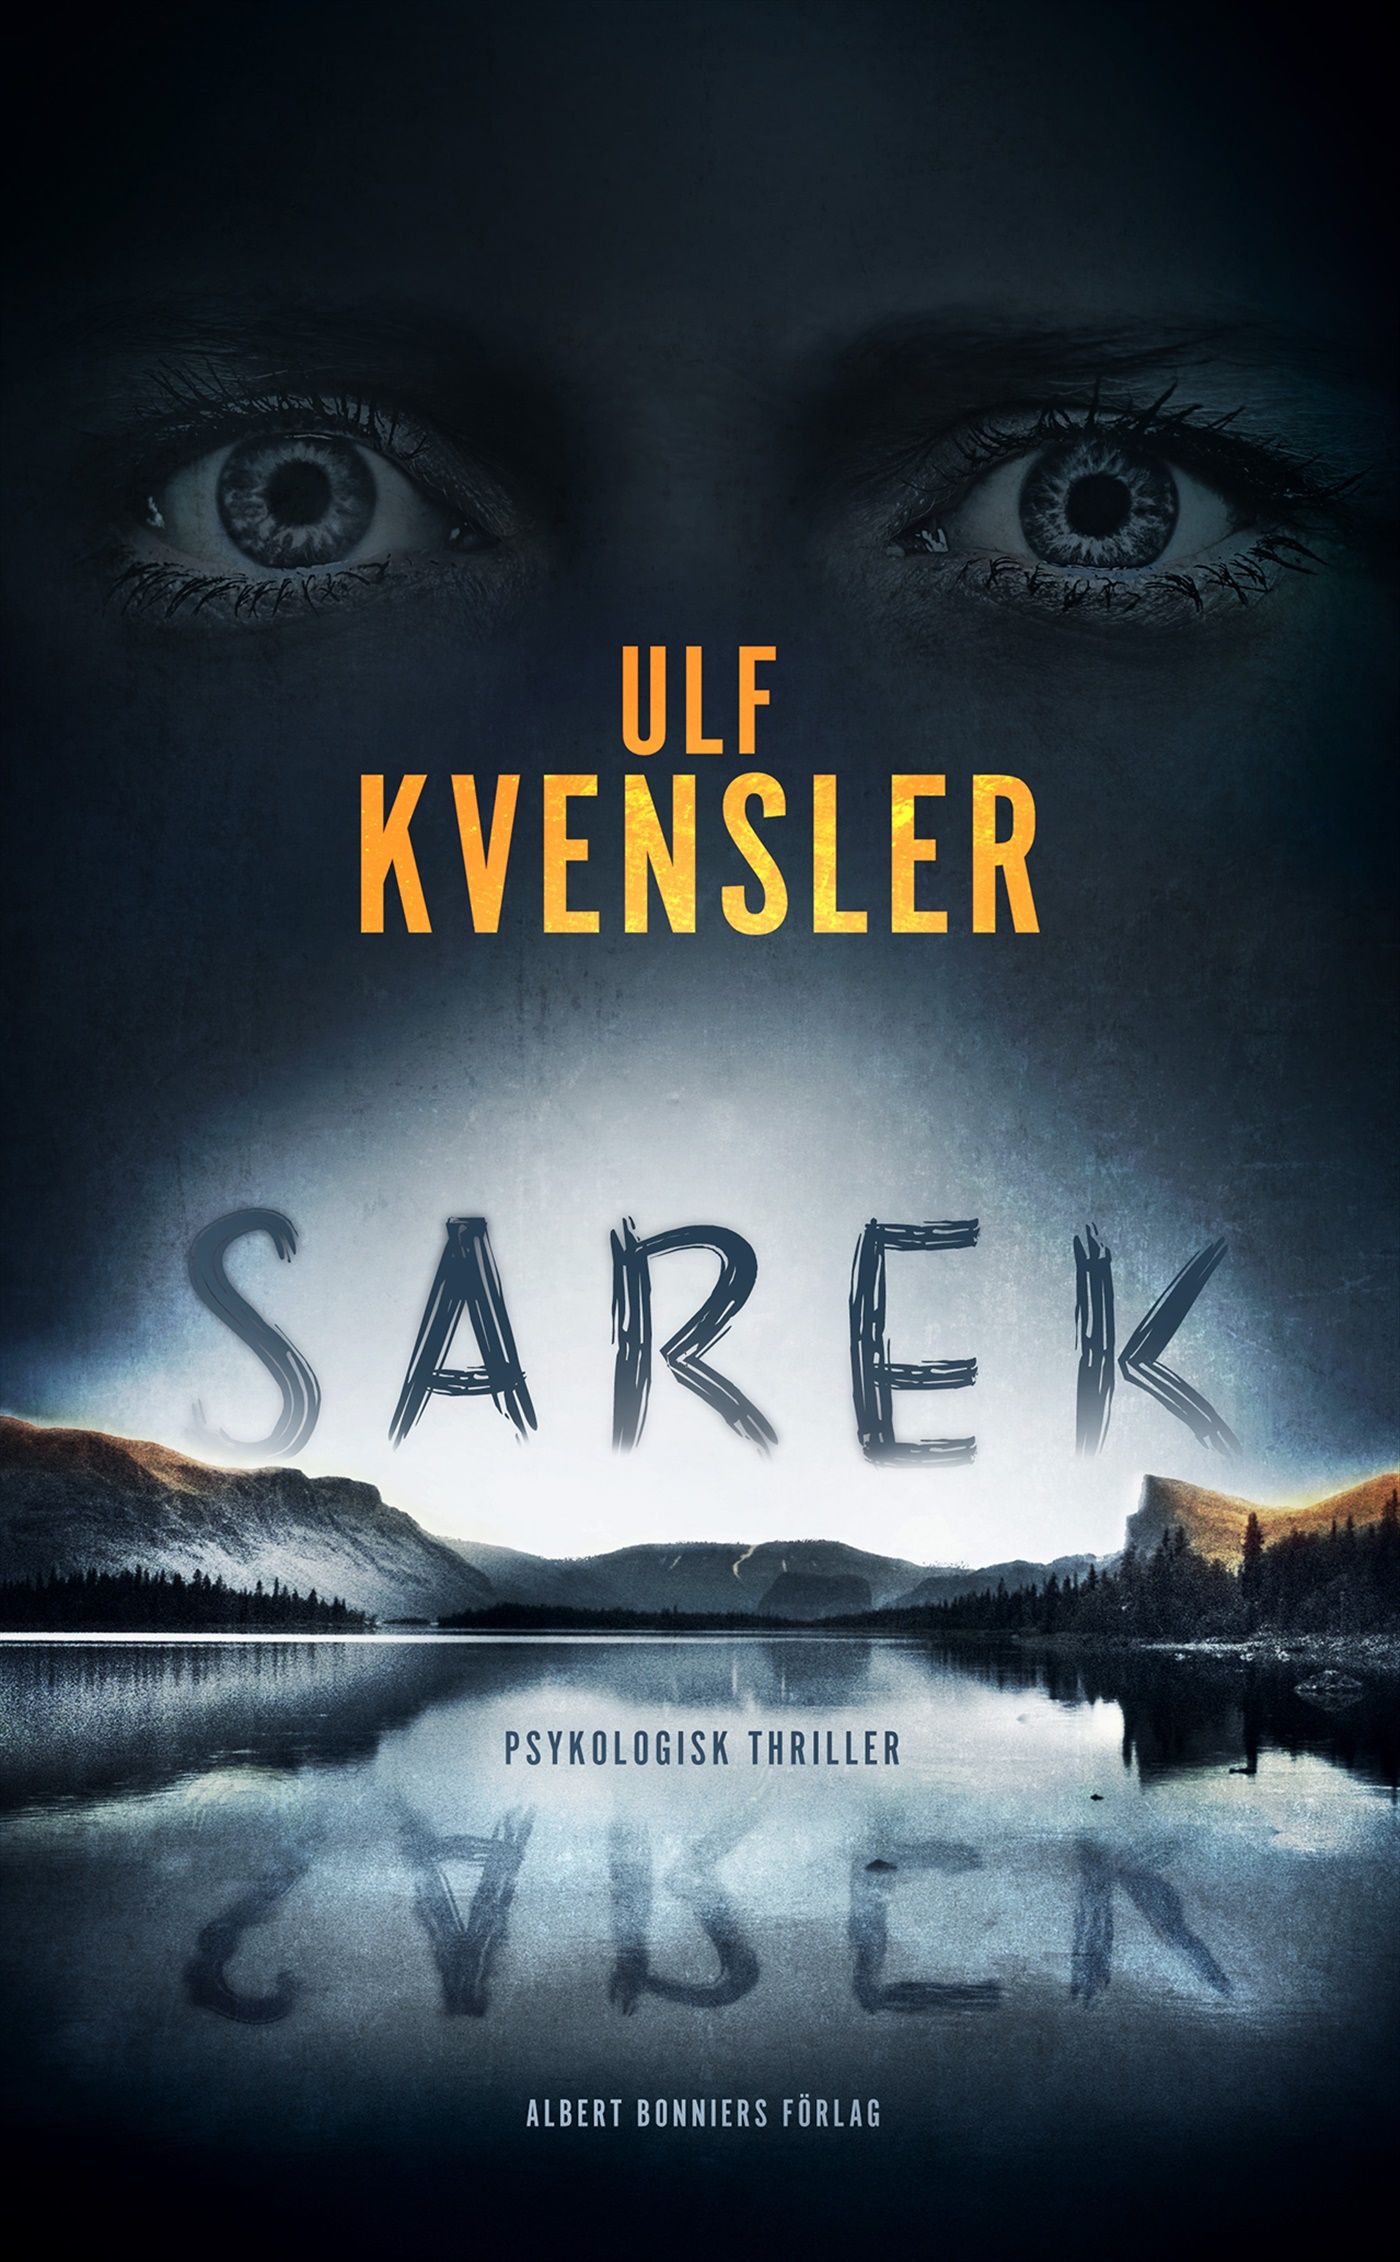 Sarek, eBook by Ulf Kvensler